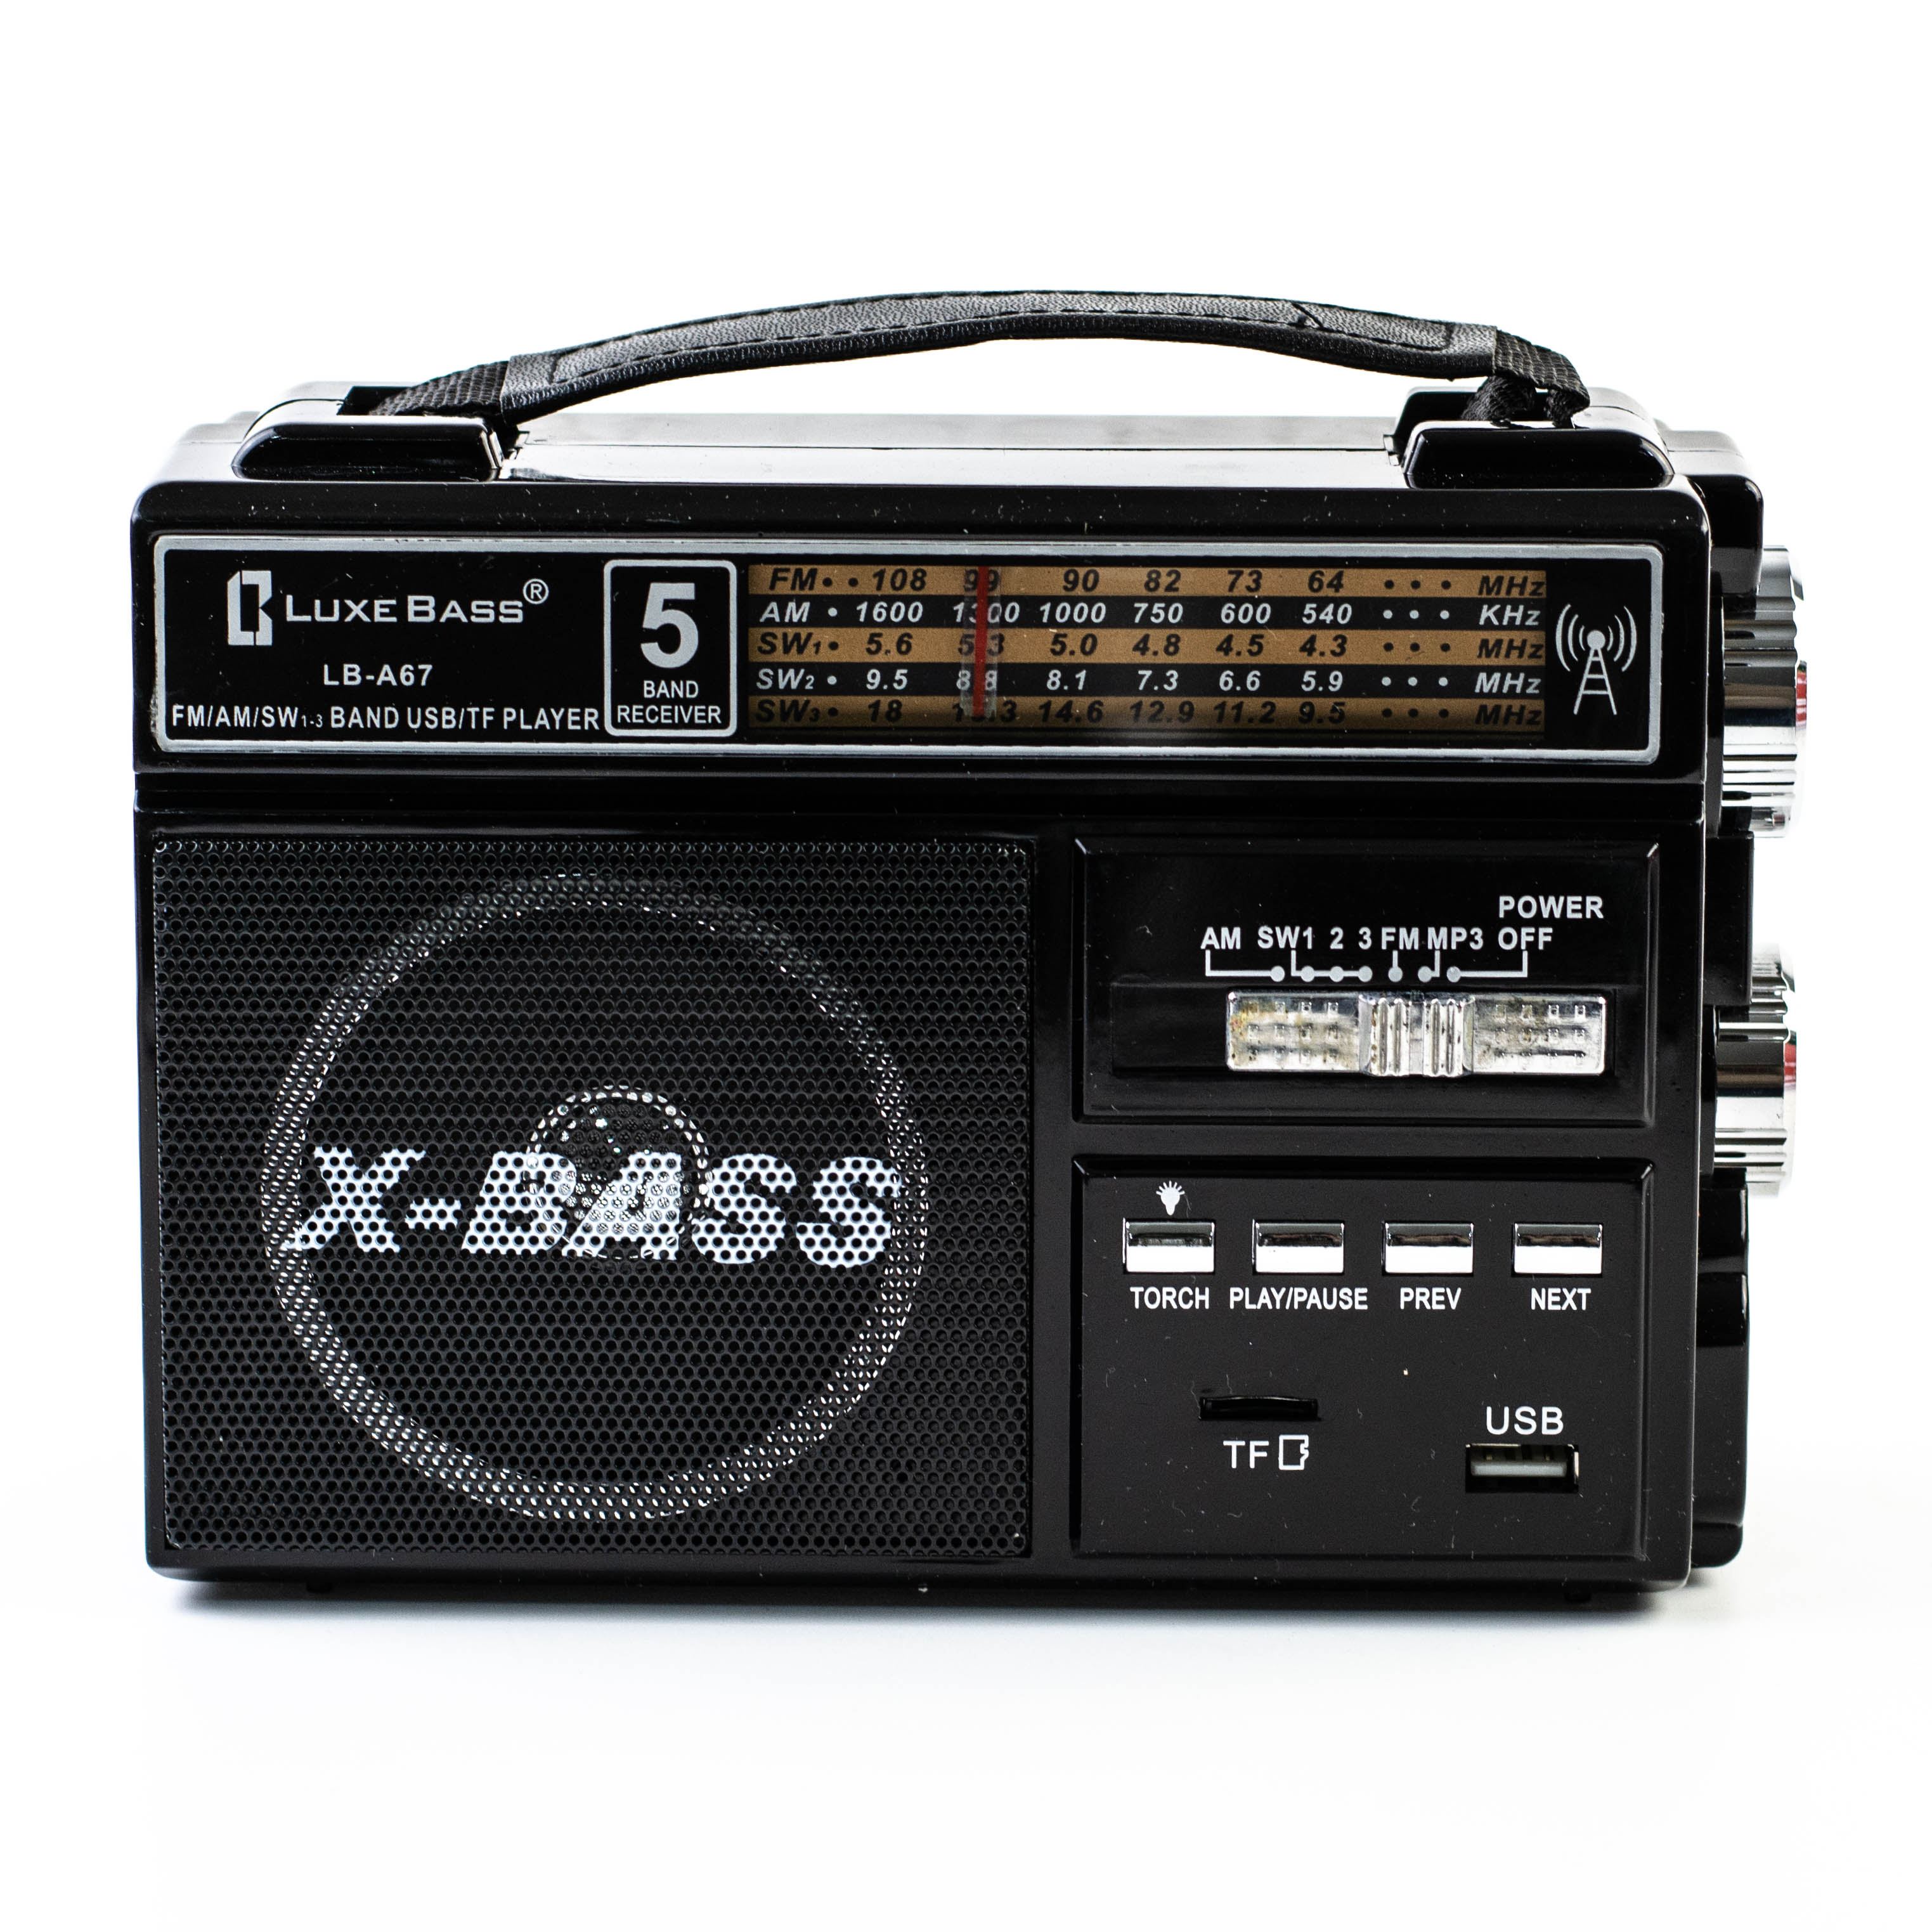 Bass lb. Радиоприемник LUXEBASS lb-106. Радиоприемник LUXEBASS lb-409ac. Радиоприемник Luxe Bass lb-a29. Luxe Bass lb a67.